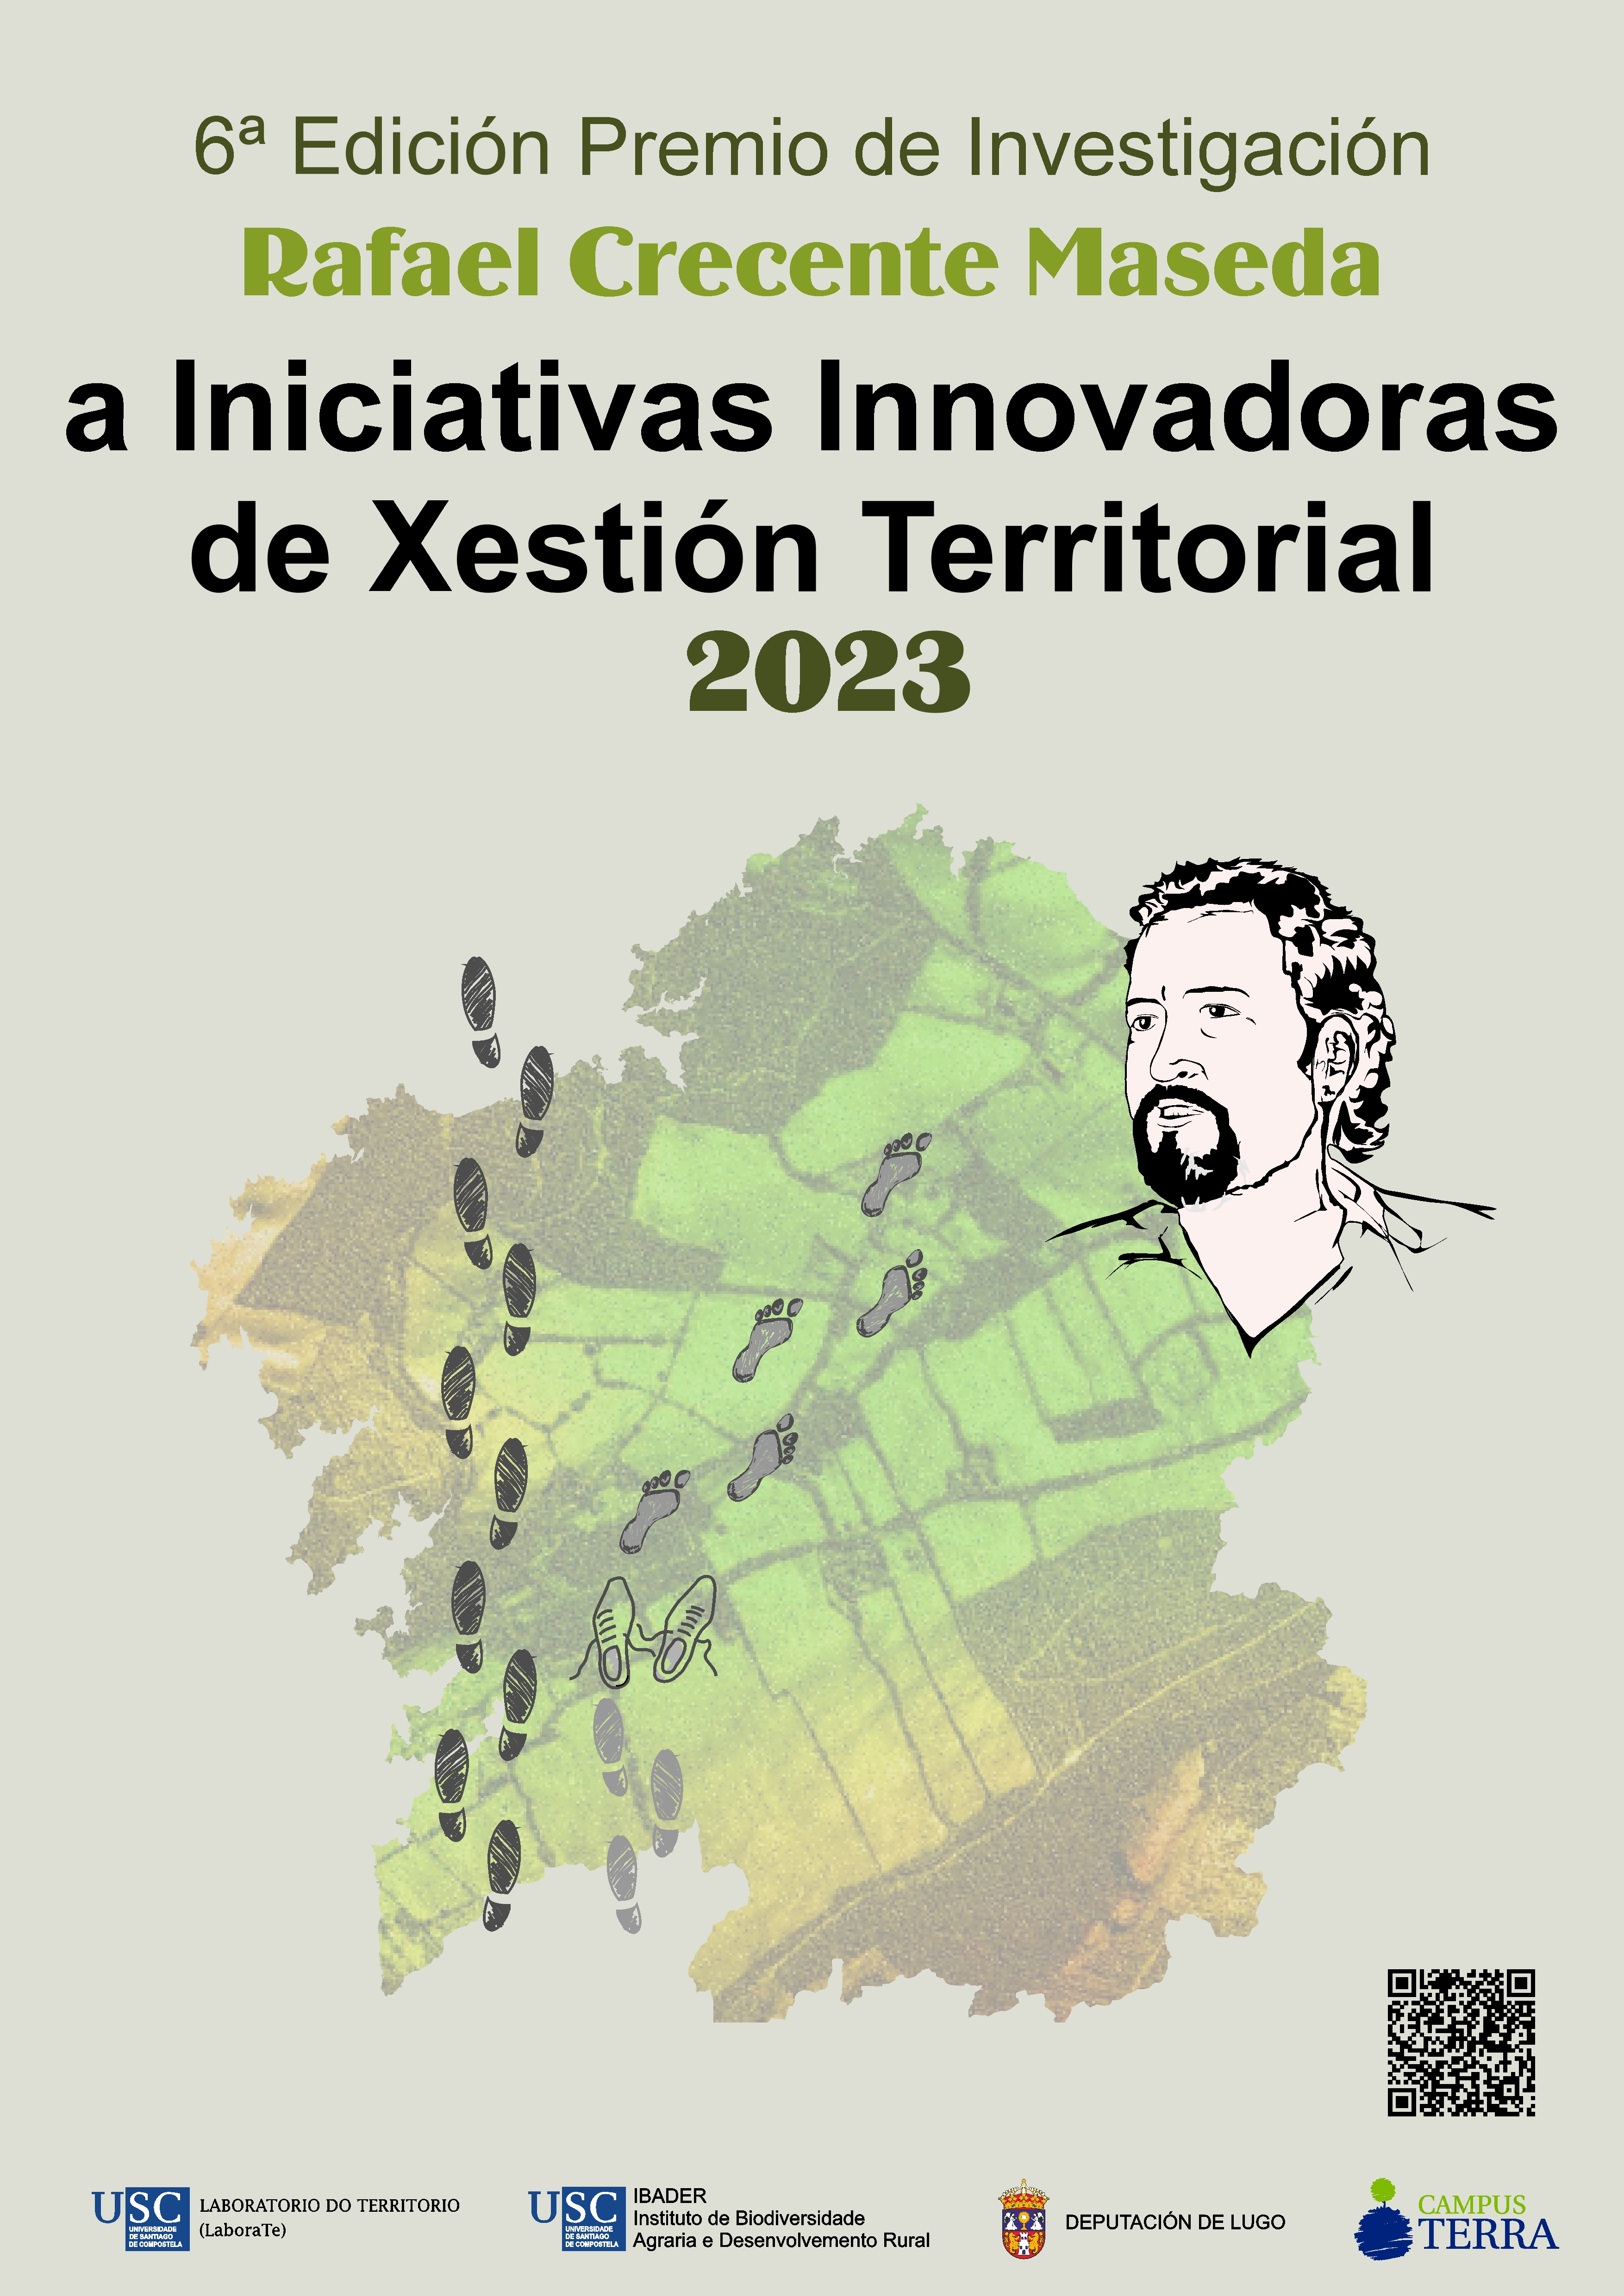 2023/02/20: Aberta a convocatoria  da VI Edición dos Premios “Rafael Crecente” a Iniciativas Innovadoras de Xestión Territorial 